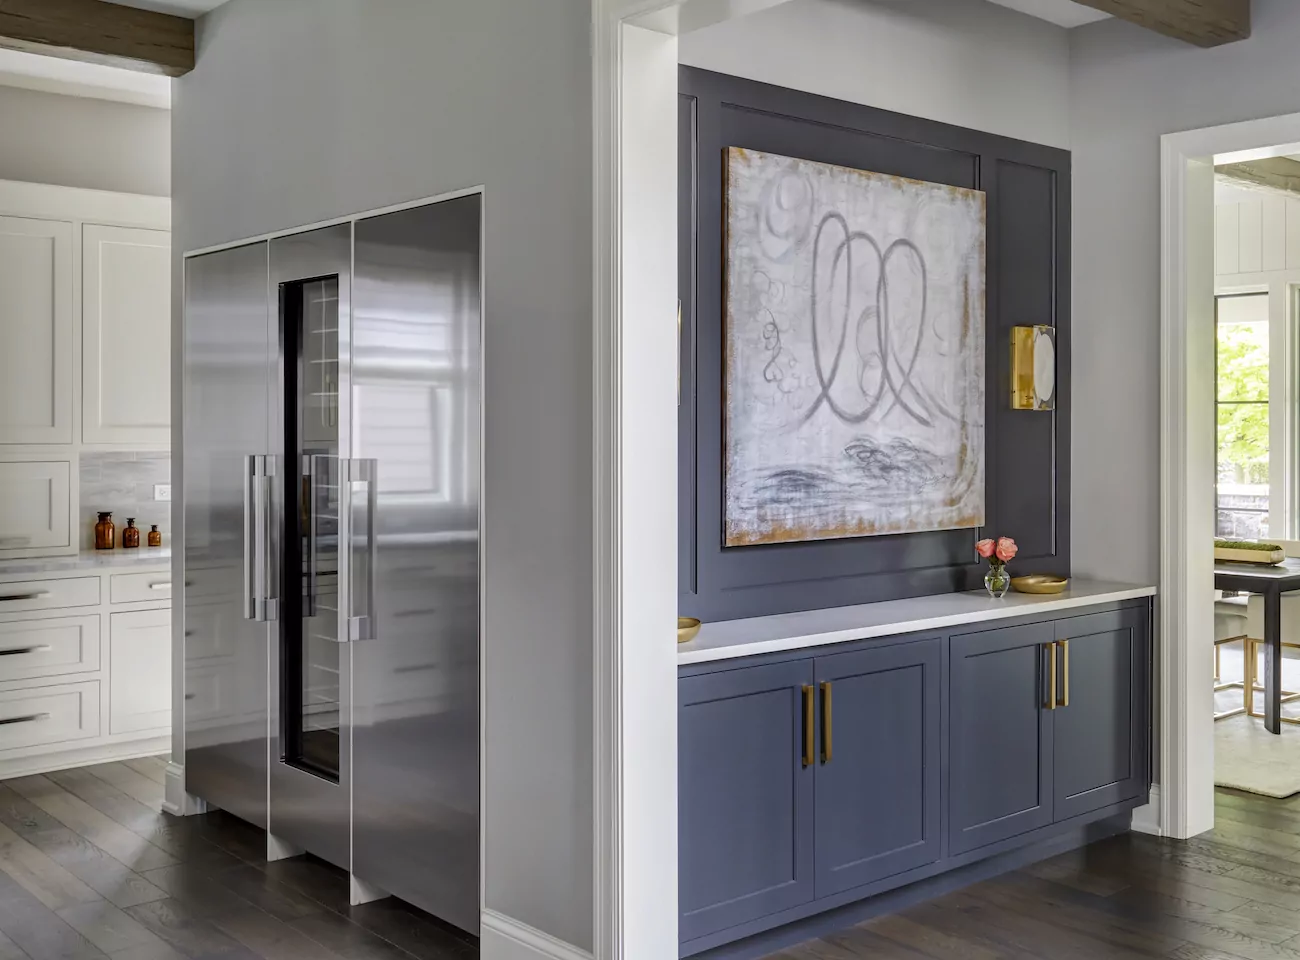 double-door-fridge-wine-fridge-kitchen-design